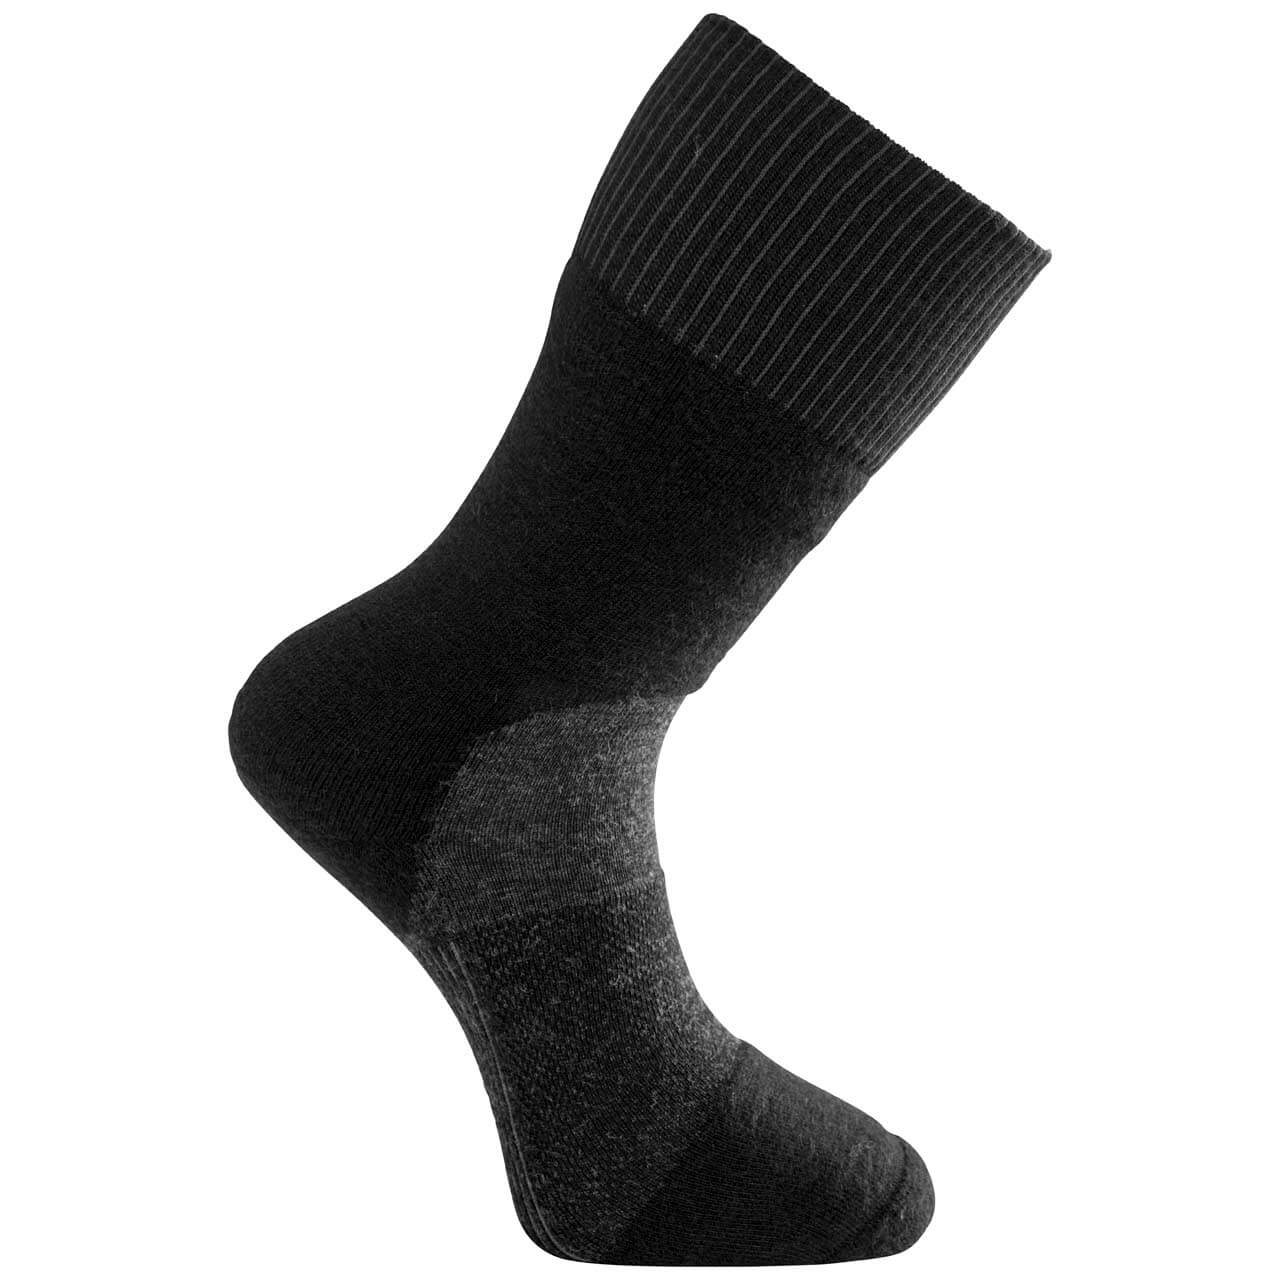 Woolpower Skilled Socken 400 - Black/Dark Grey, 45-48